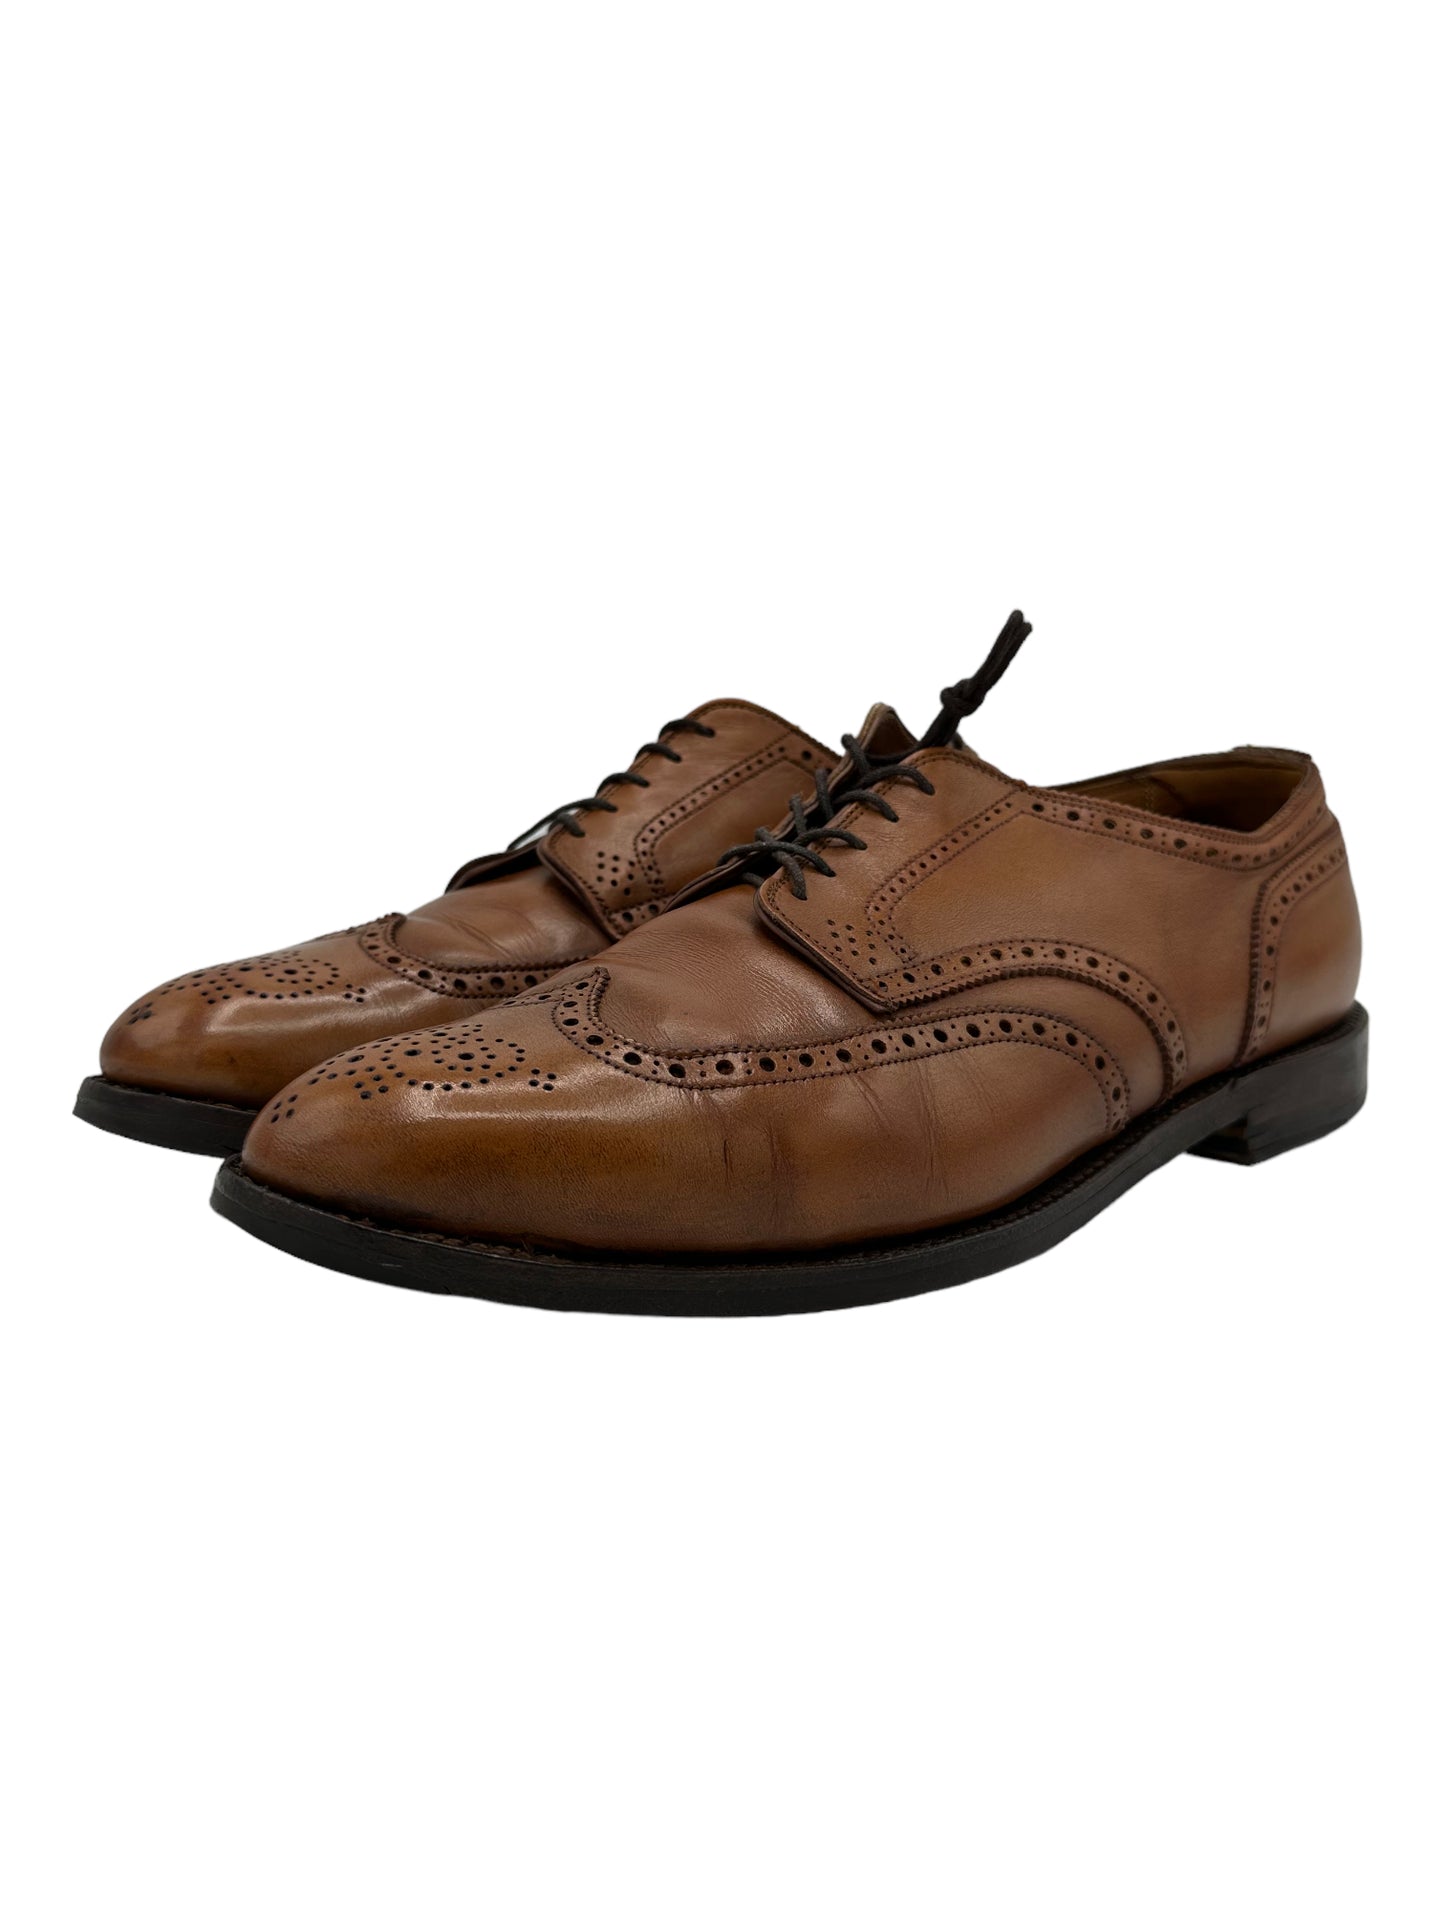 Alden 966 Wingtip Tan Oxford Saddle Shoes